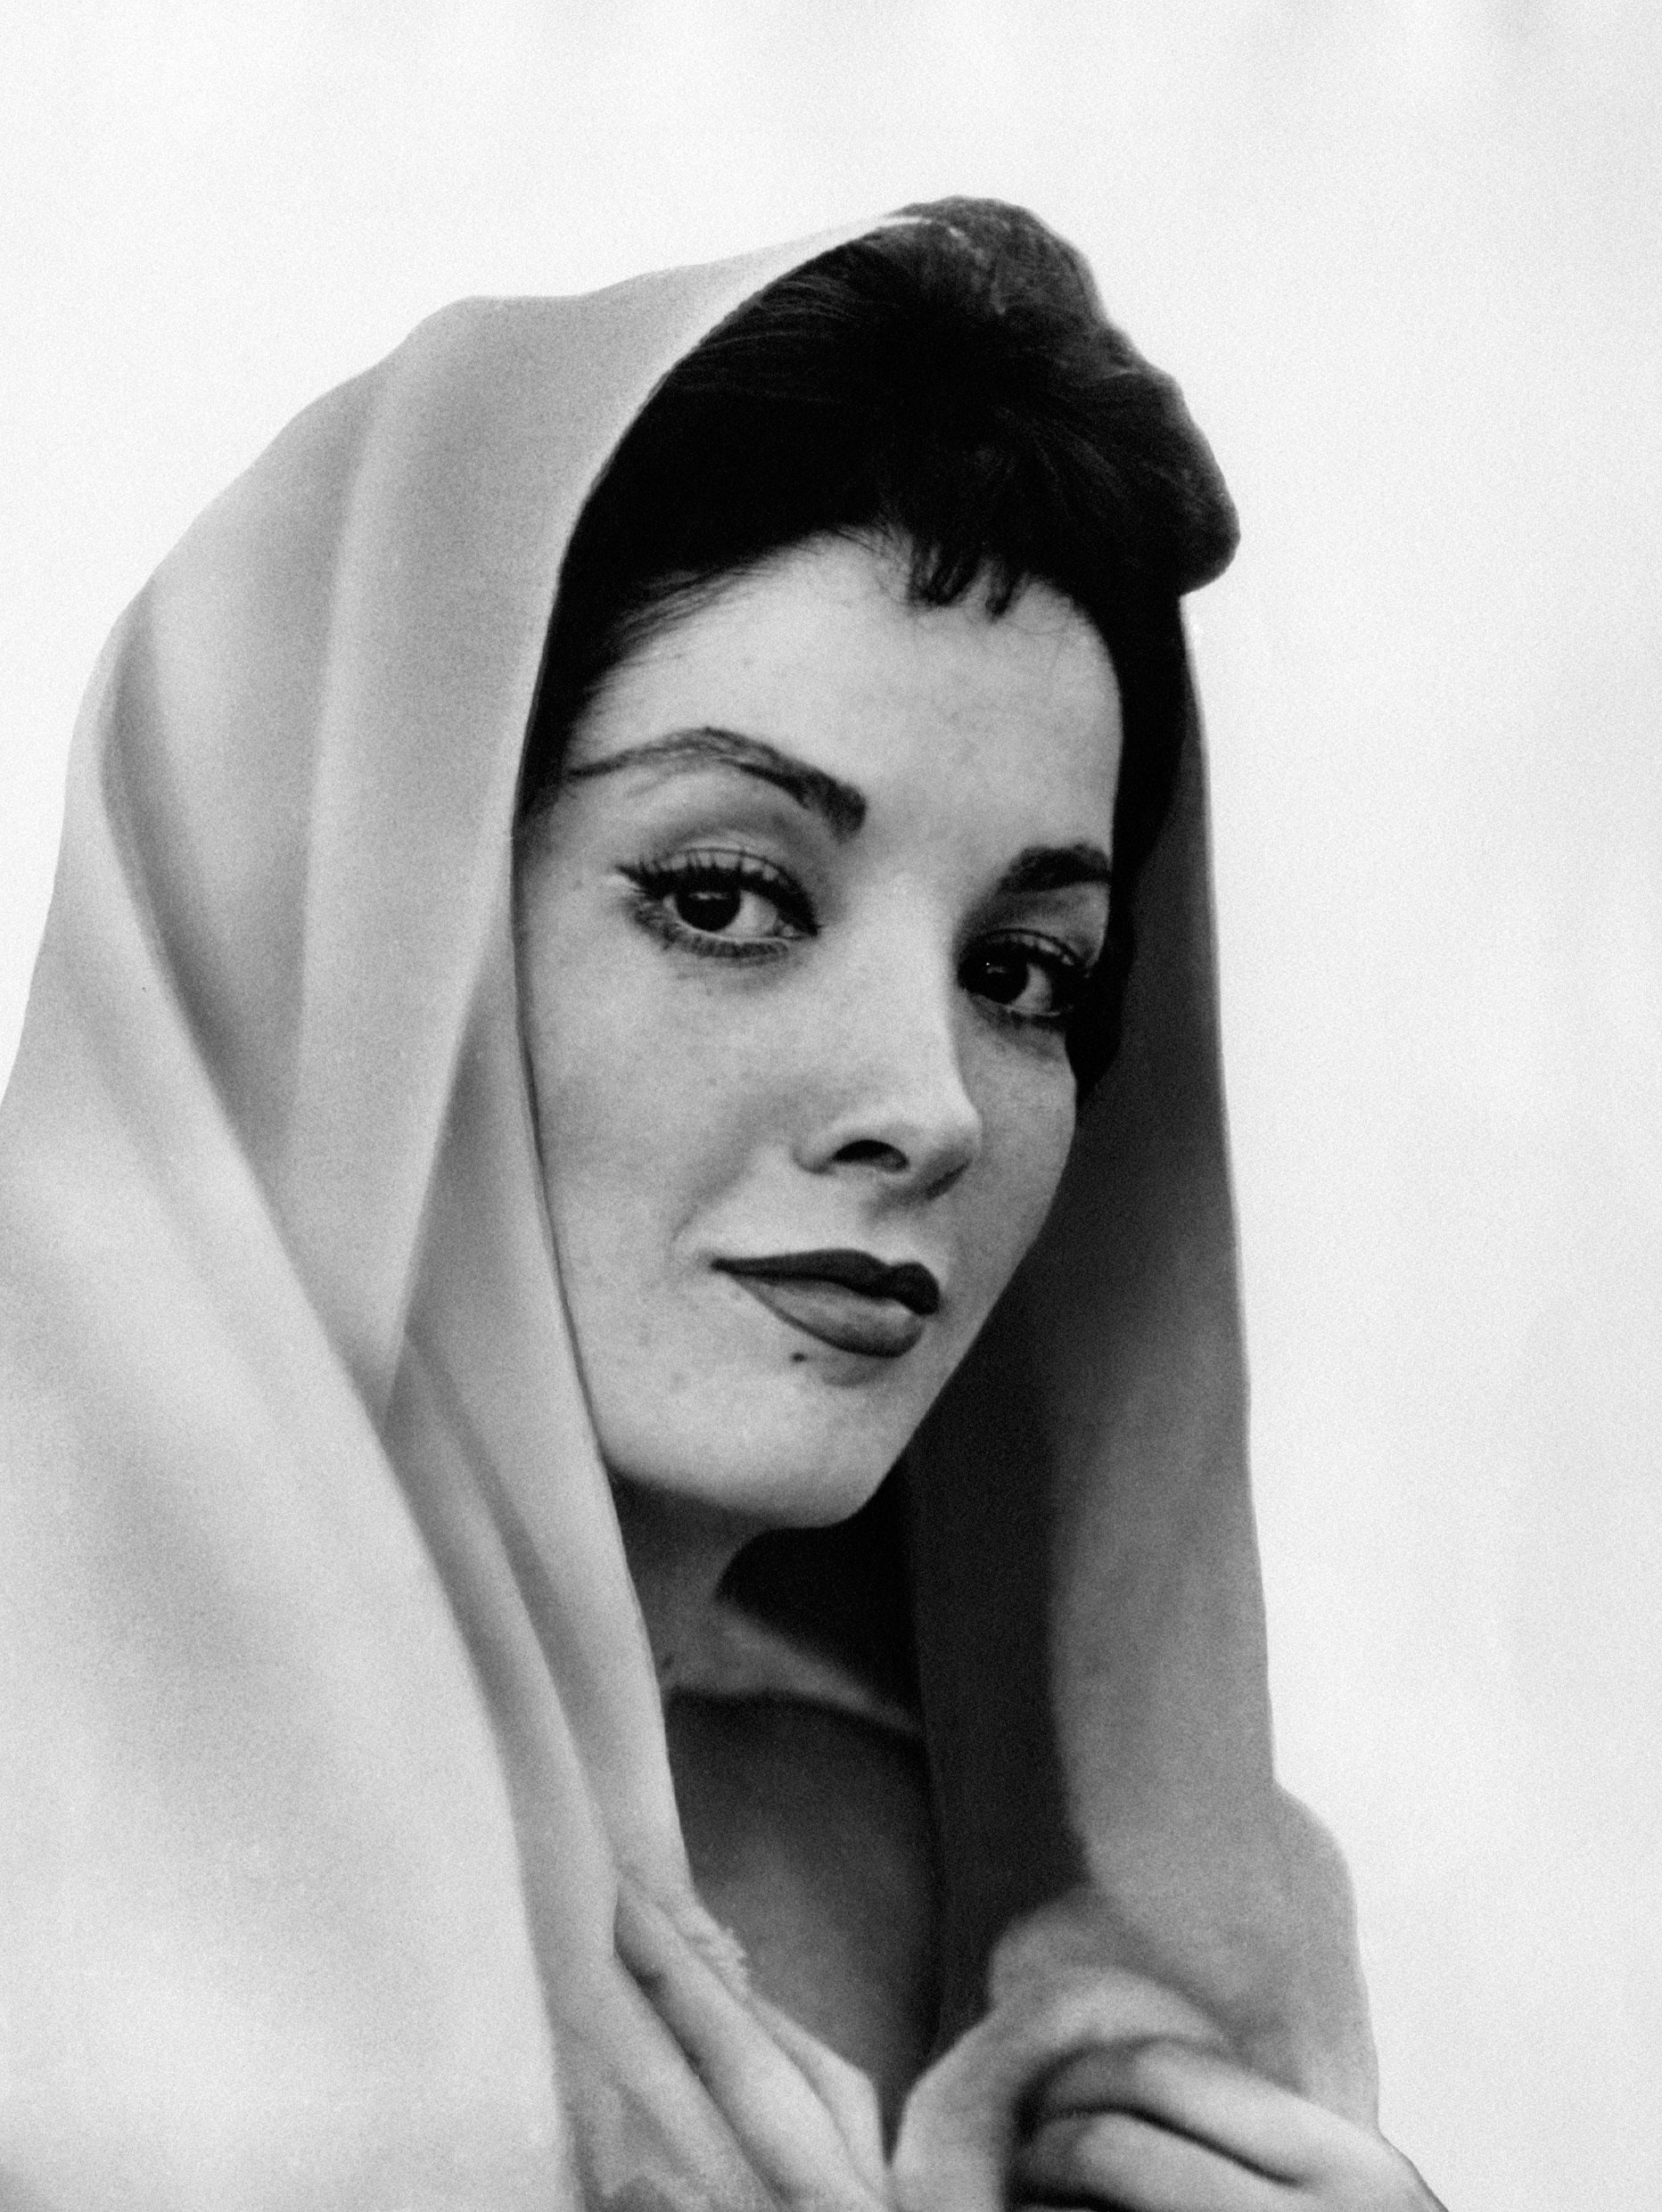 Linda Cristal posa con un elegante velo en la cabeza para la revista Modern Screen en 1959. | Foto: Getty Image